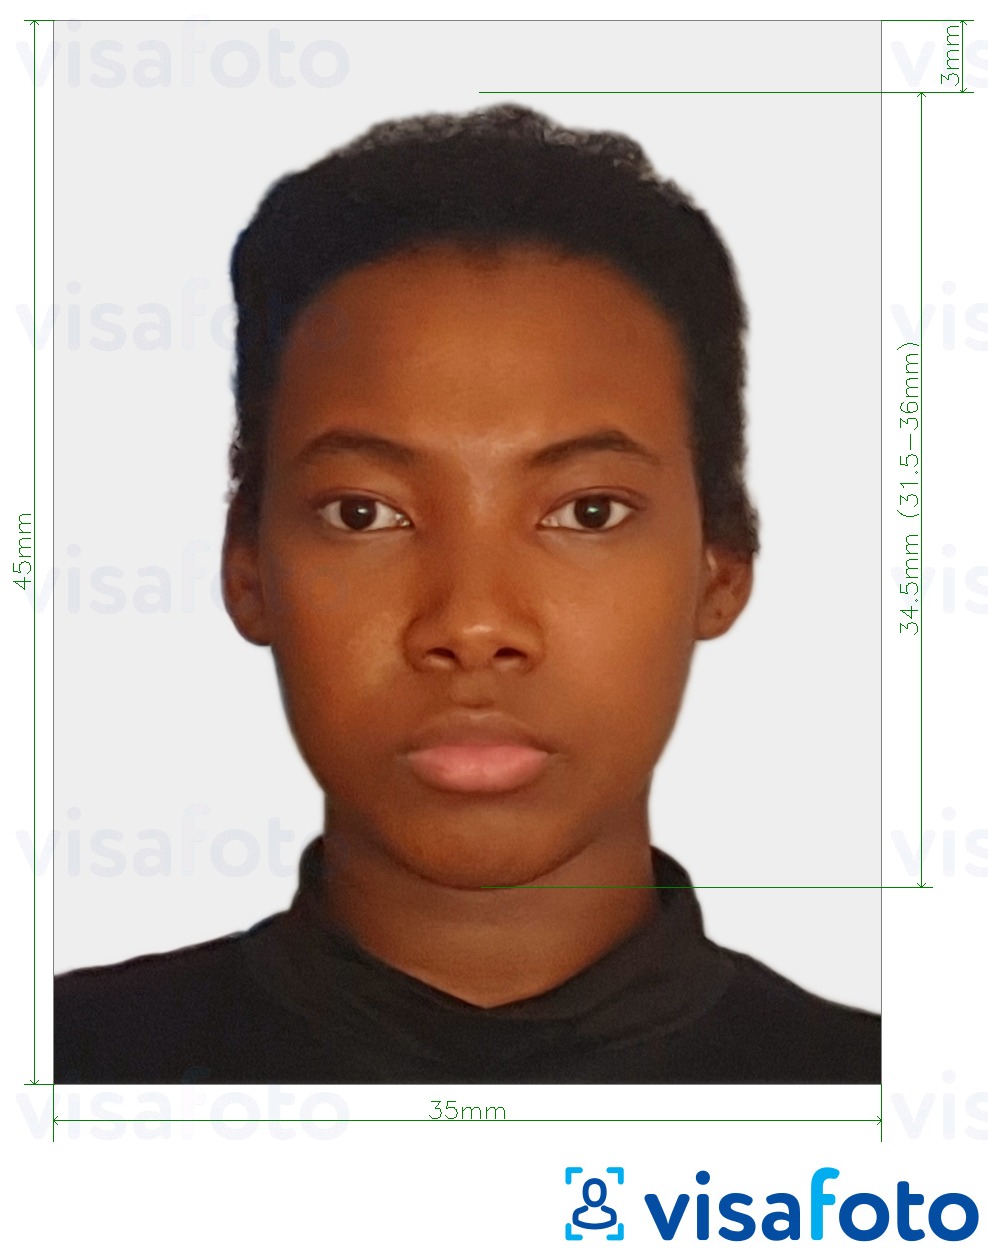 نمونه ی یک عکس برای گذرنامه زیمبابوه 3.5x4.5 سانتی متر (35x45 میلی متر) با مشخصات دقیق